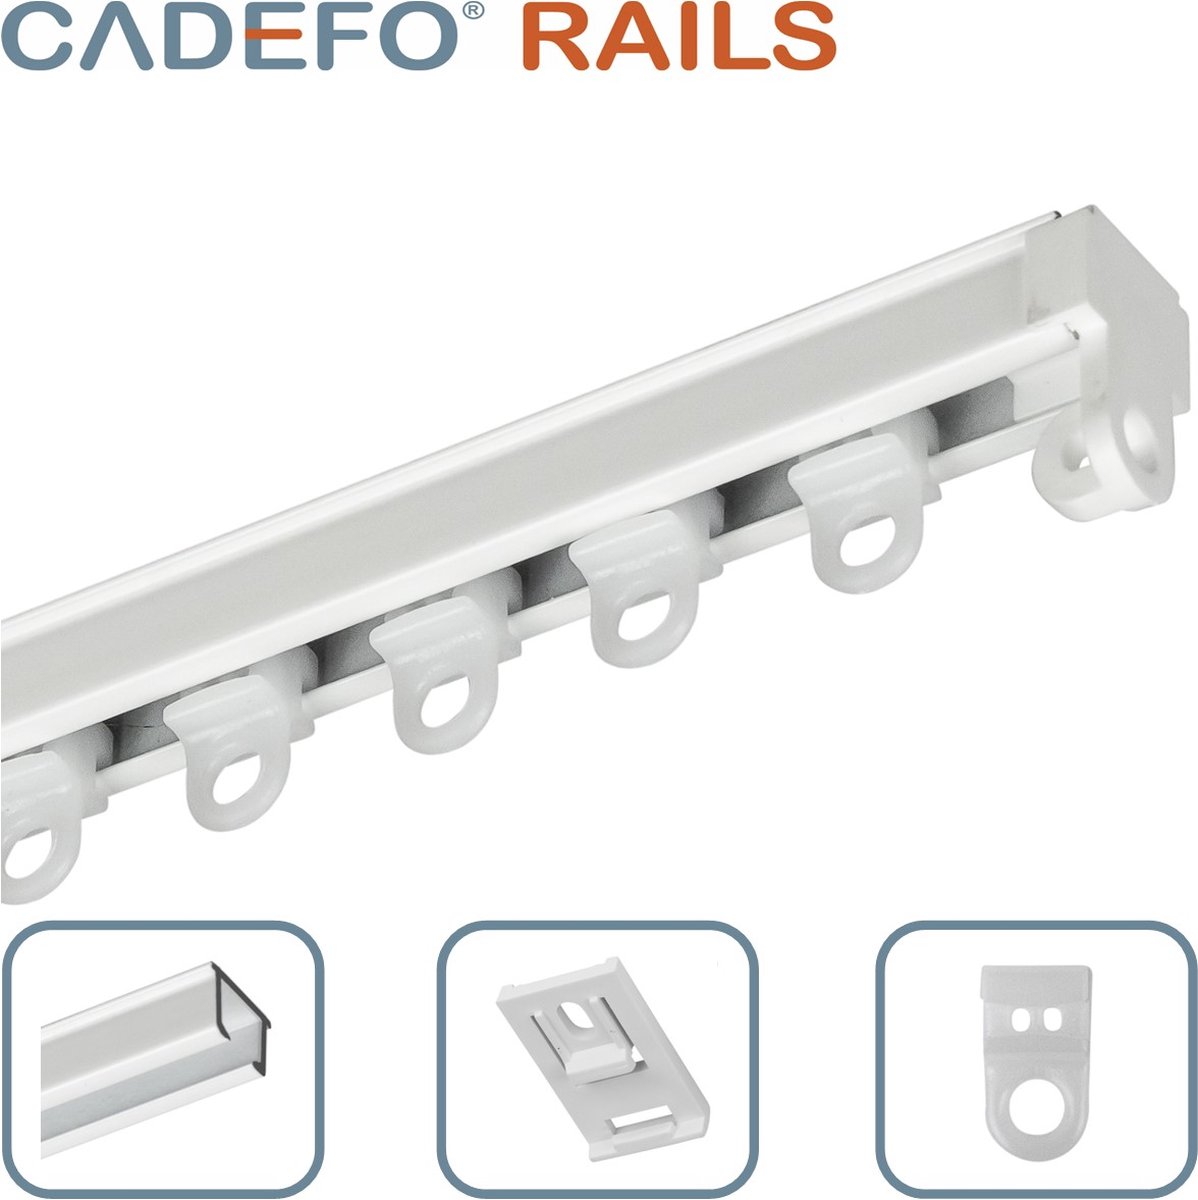 CADEFO RAILS (251 - 300 cm) Gordijnrails - Compleet op maat! - UIT 1 STUK - Leverbaar tot 6 meter - Plafondbevestiging - Lengte 285 cm